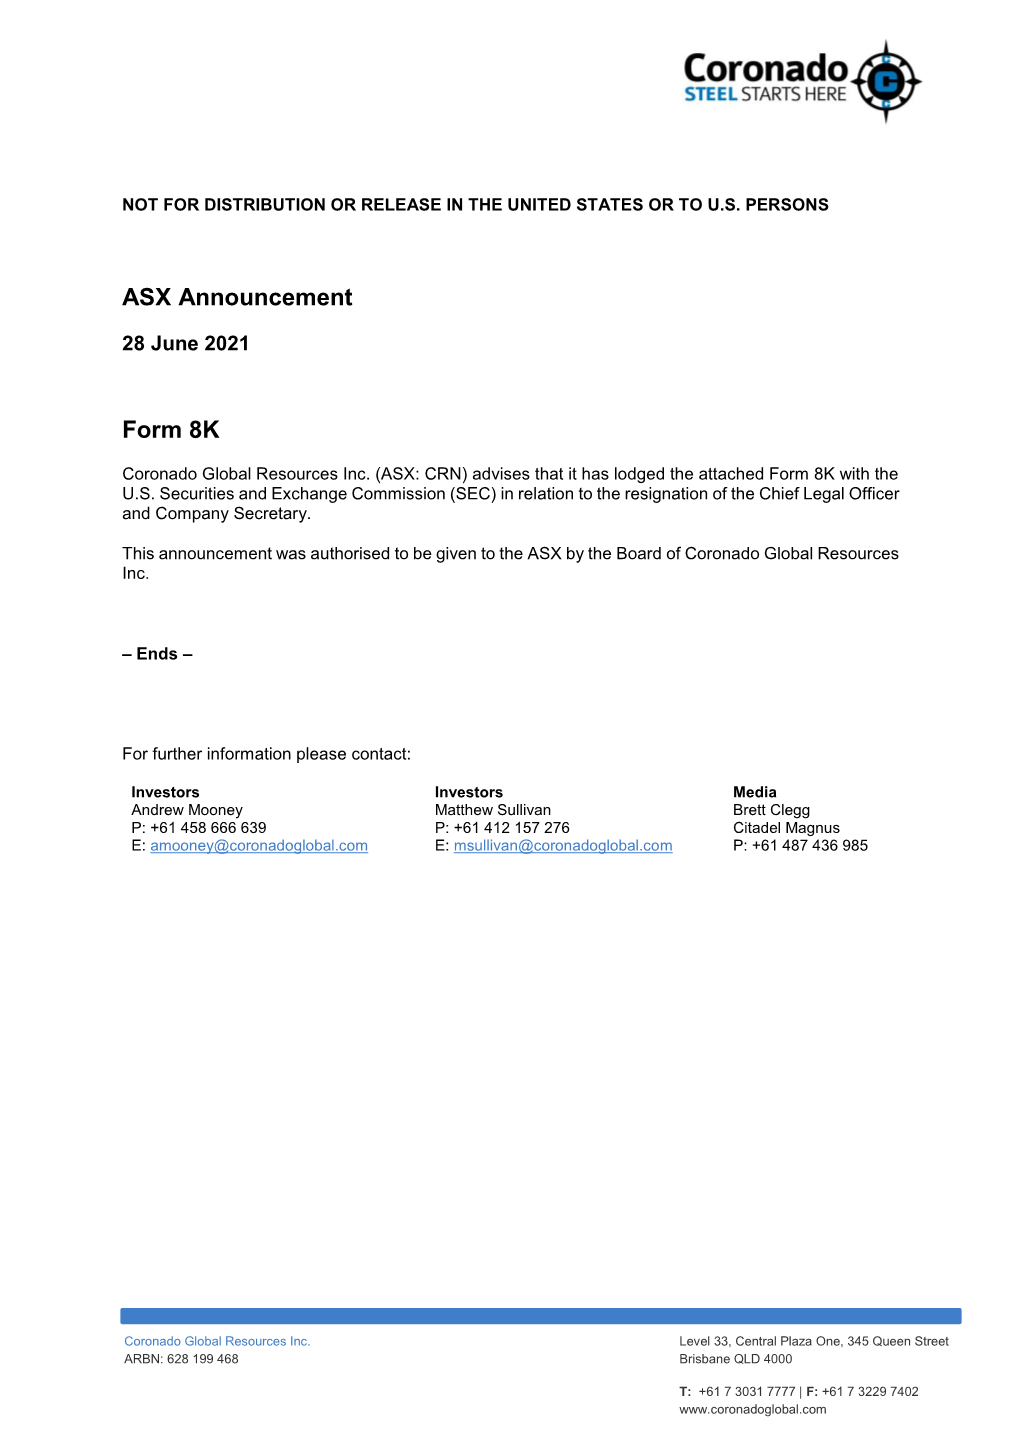 ASX Announcement Form 8K